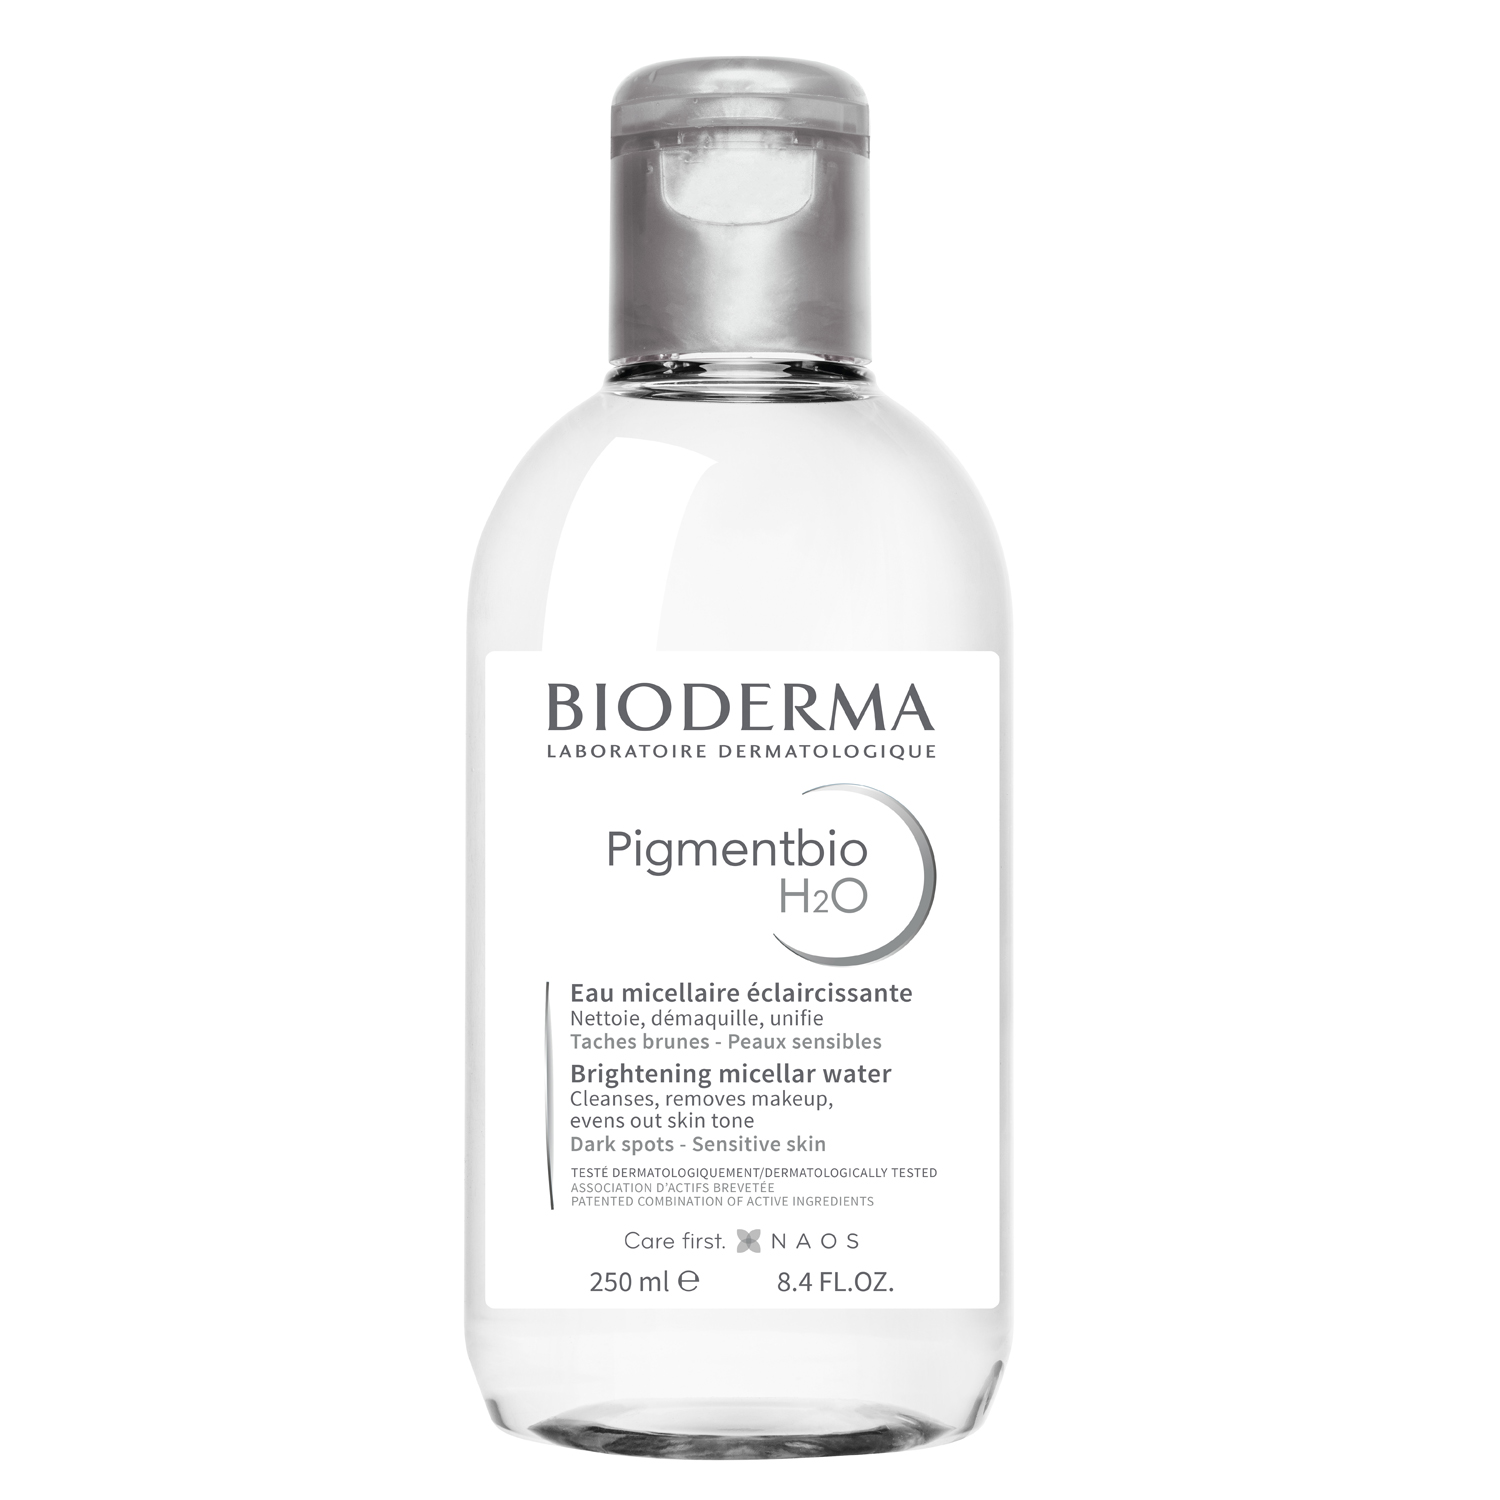 Bioderma Осветляющая и очищающая мицеллярная вода Н2О, 250 мл (Bioderma, Pigmentbio) осветляющая мицеллярная вода bioderma pigmentbio 250 мл